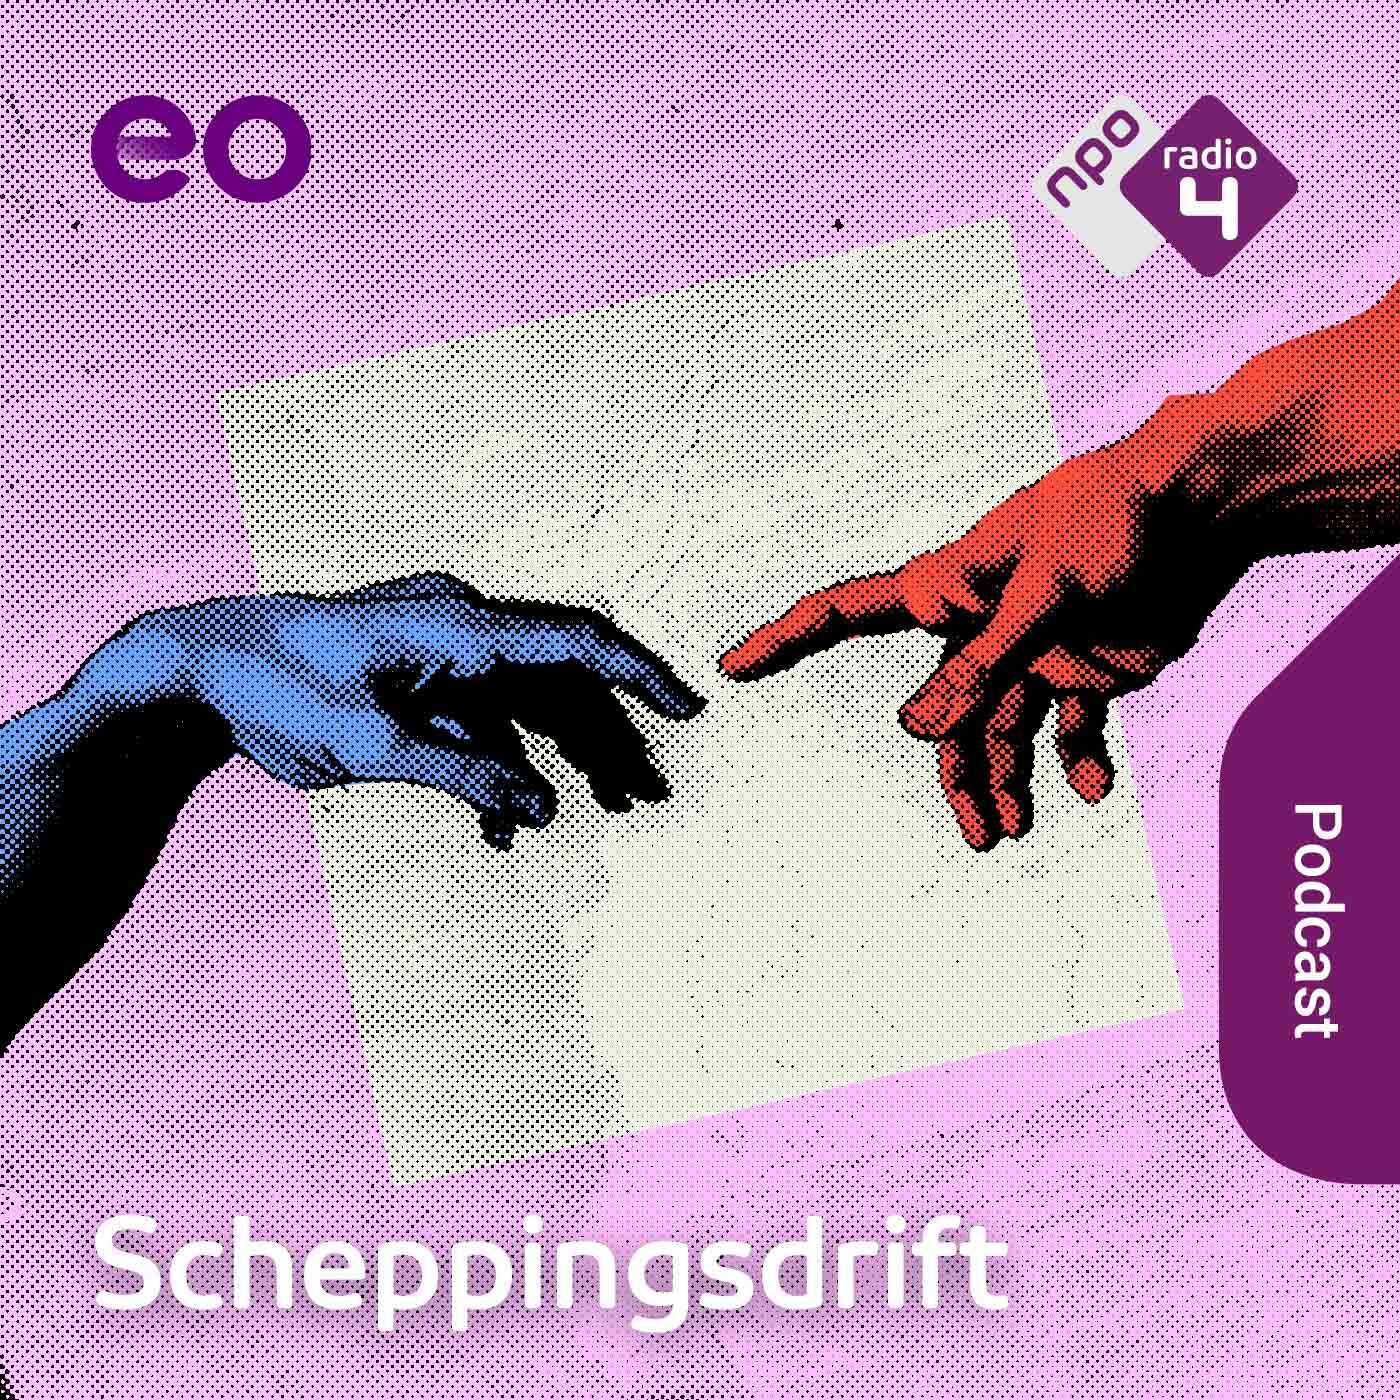 Scheppingsdrift logo